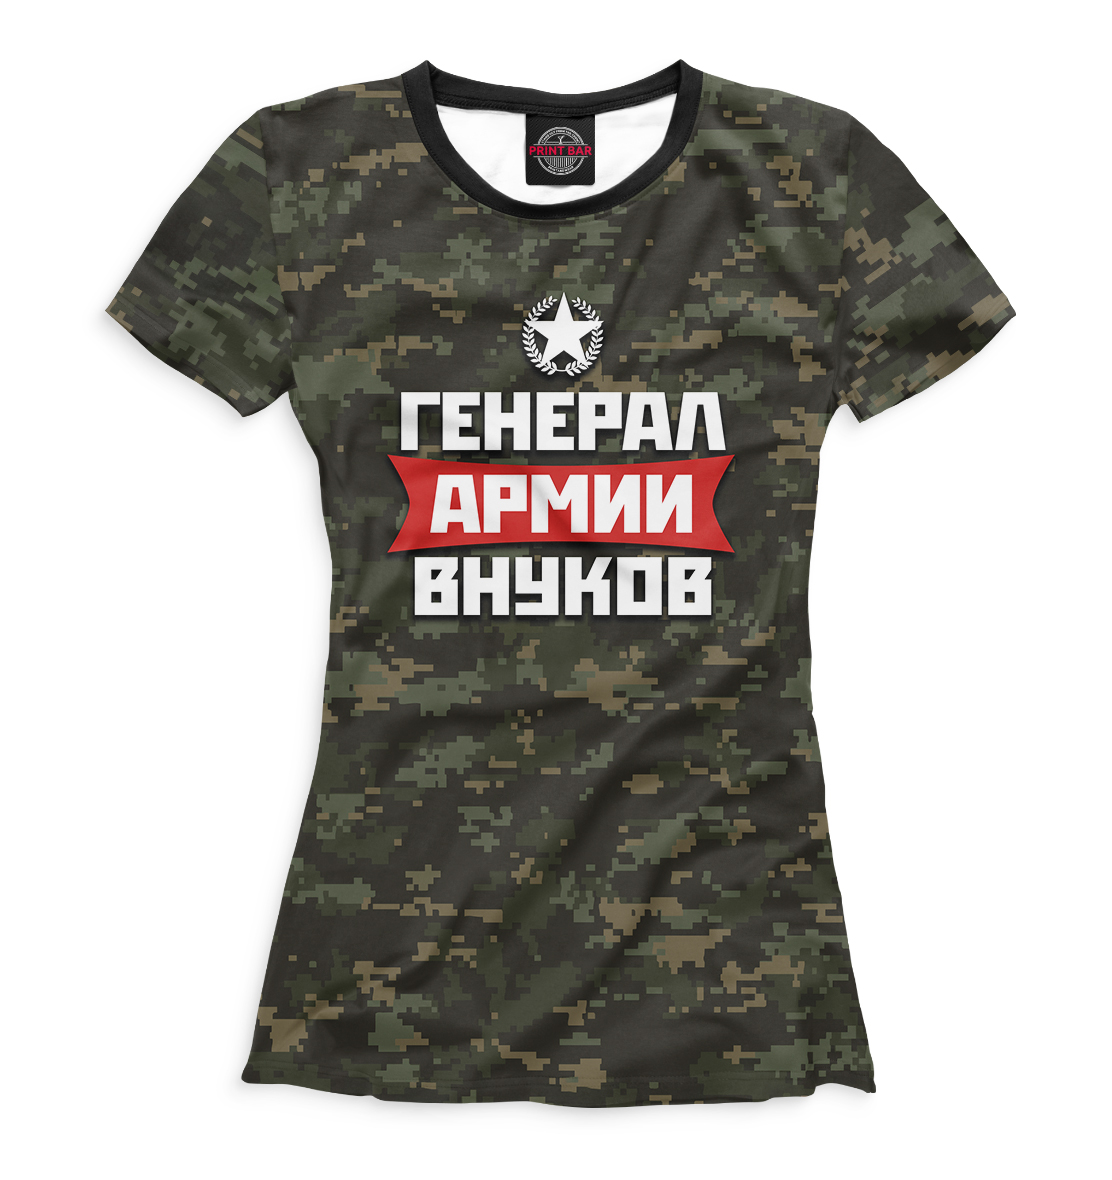 Футболка Генерал армии внуков для девочек, артикул: 23F-453764-fut-1mp